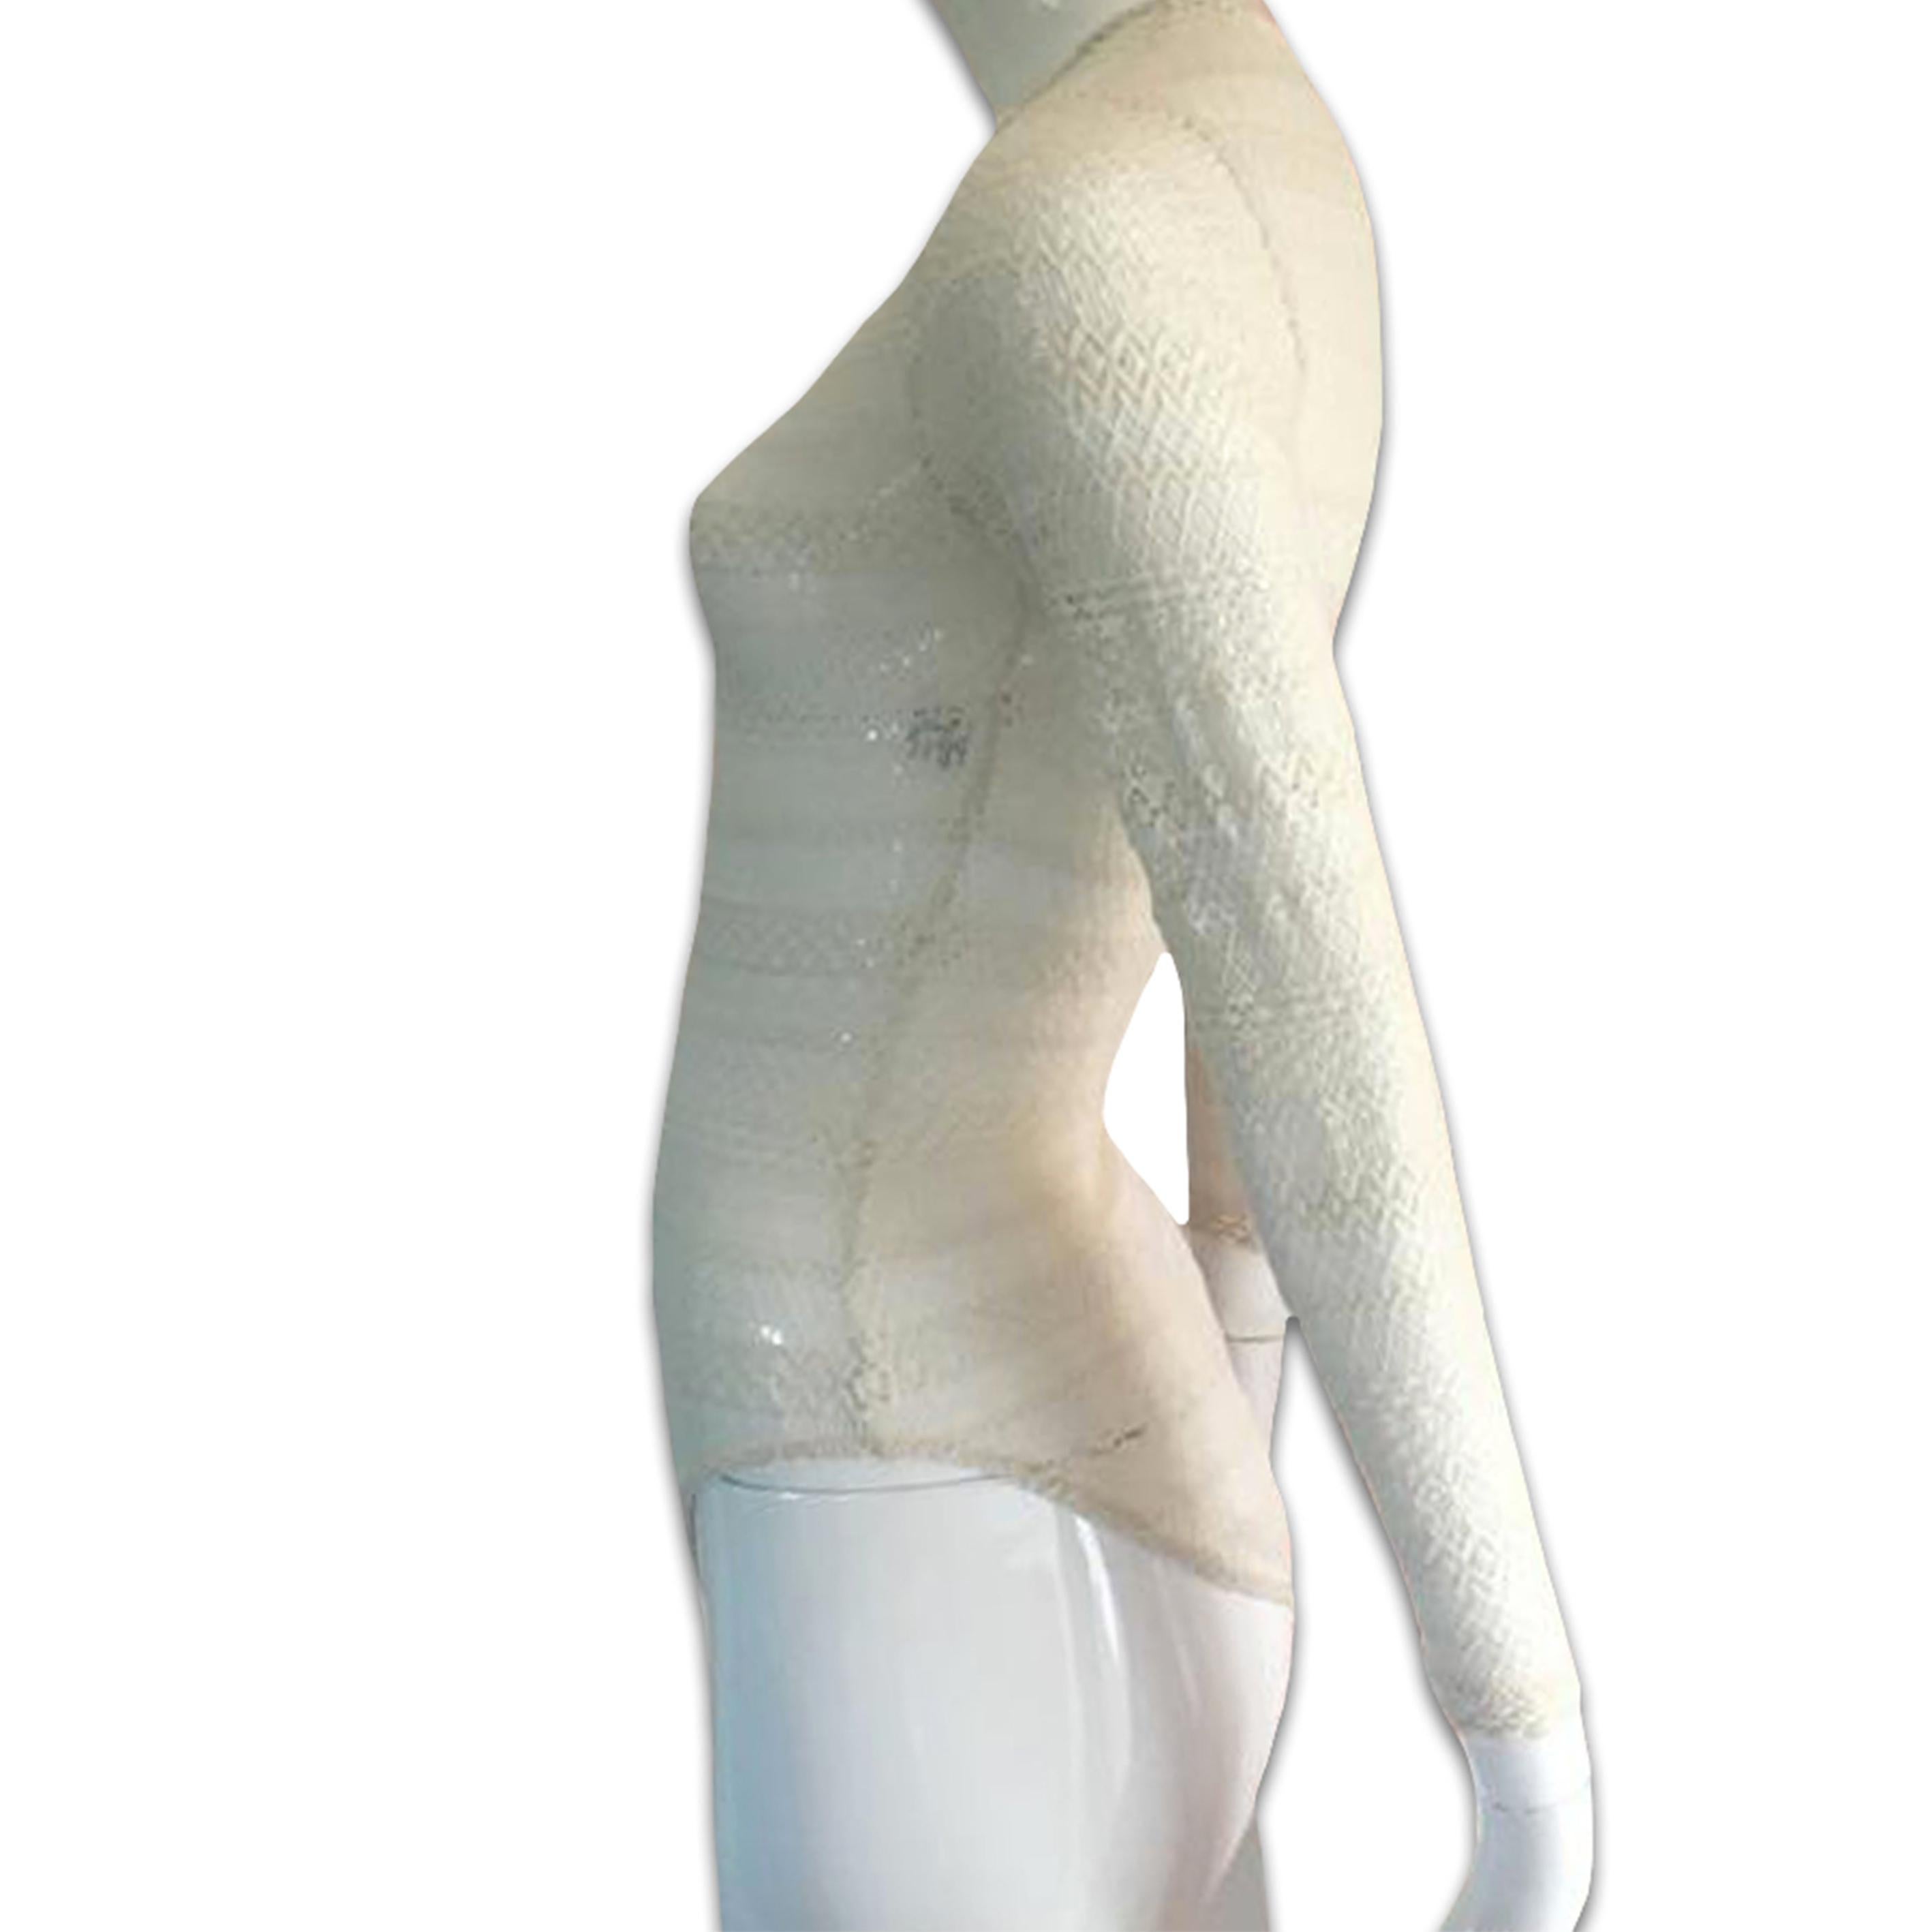 CHANTAL THOMASS SS1995 Bodysuit in Creme

Tag: THOMASS

Größe S/M

Messungen

Schultern: 14,17 Zoll / 36cm

Brustumfang: 15,35 Zoll / 39cm

Länge: 25,98 Zoll / 66cm

Material

87% Polyamid/ 13% Nylon

Reißverschluss auf der Rückseite

Perfekter